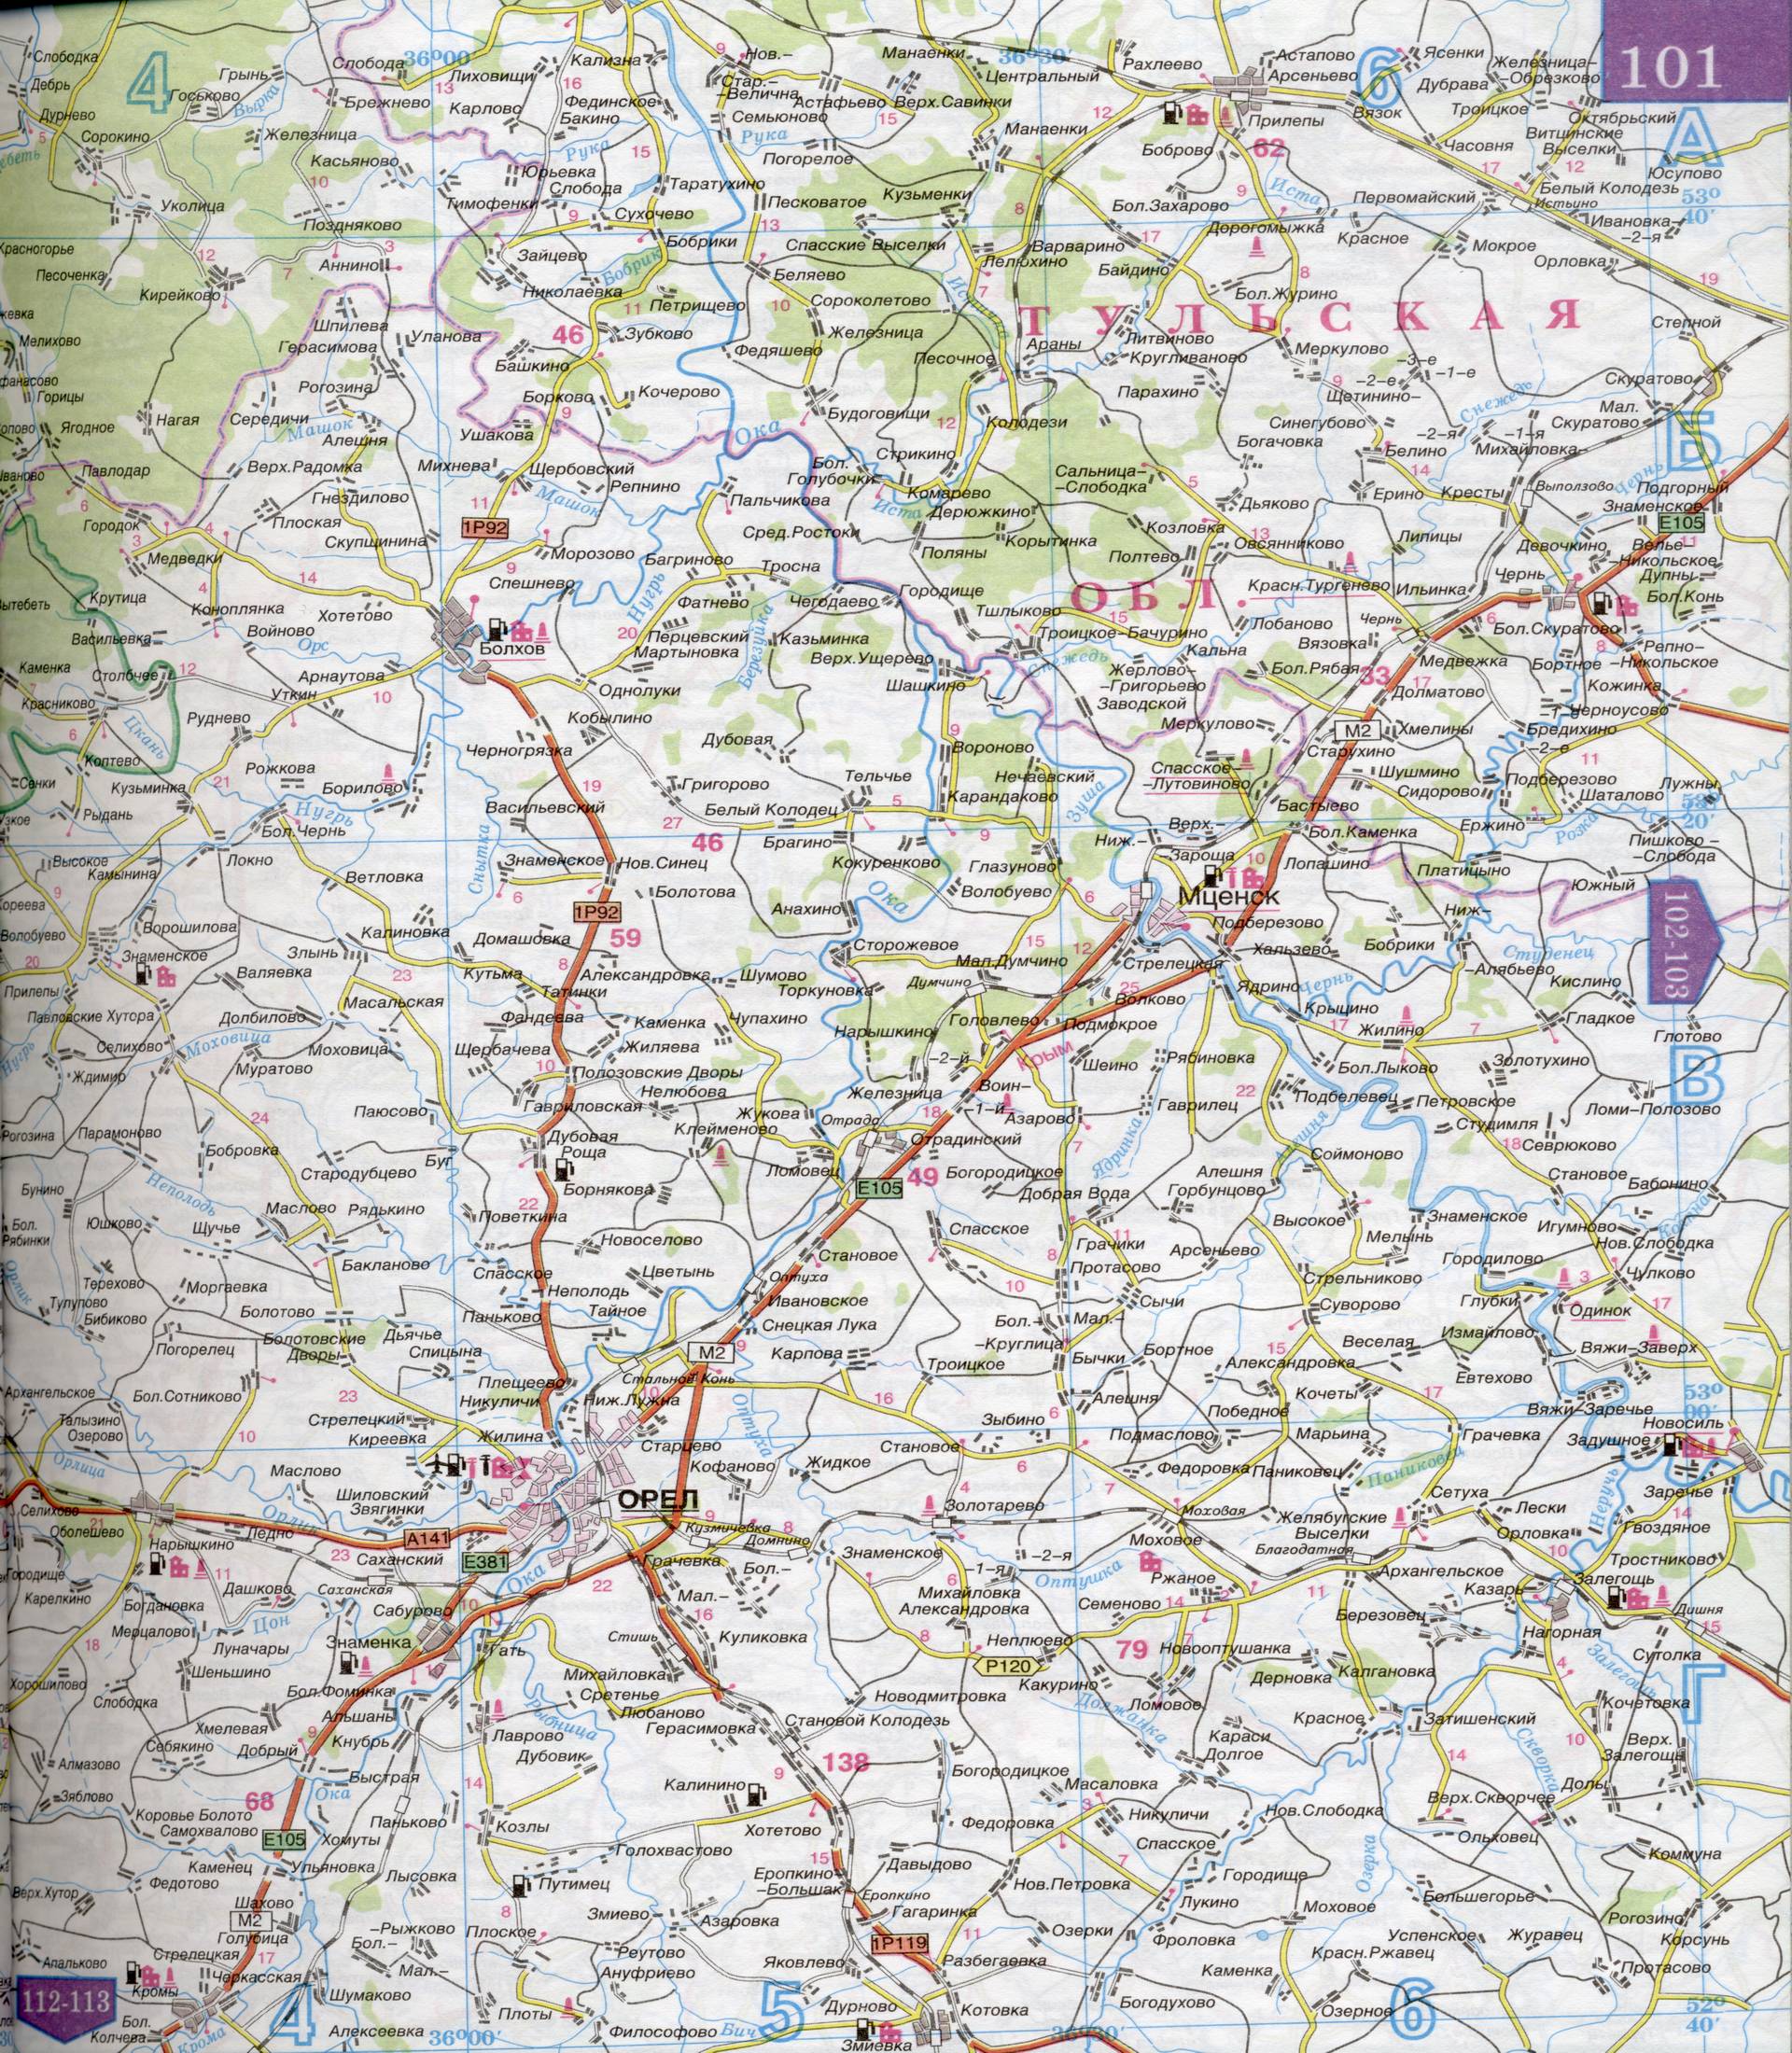 Карта Орловской области 1см:5км. Карта автомобильных дорог Орловской области, A0 - 